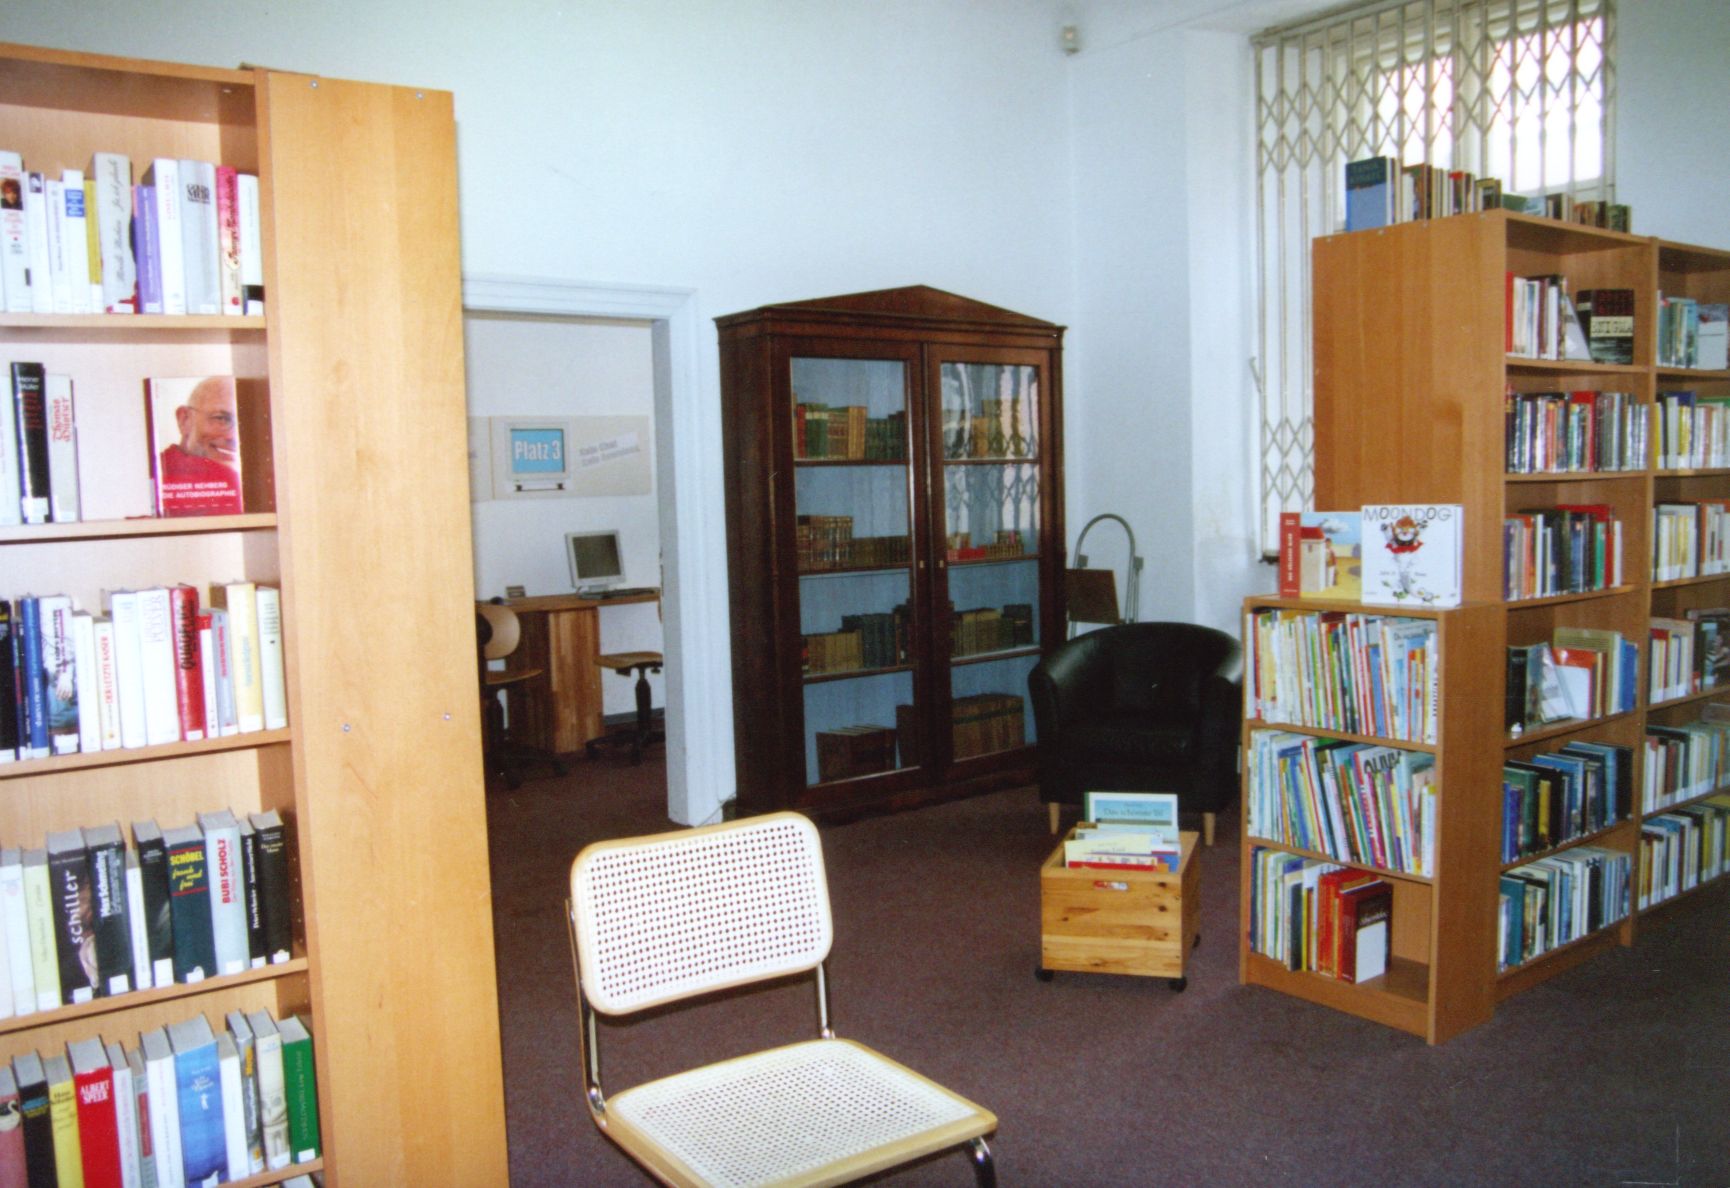 Das Bild zeigt die Bibliothek im Jahr 2006 mit großen Holzregalen und einem alten Schrank.